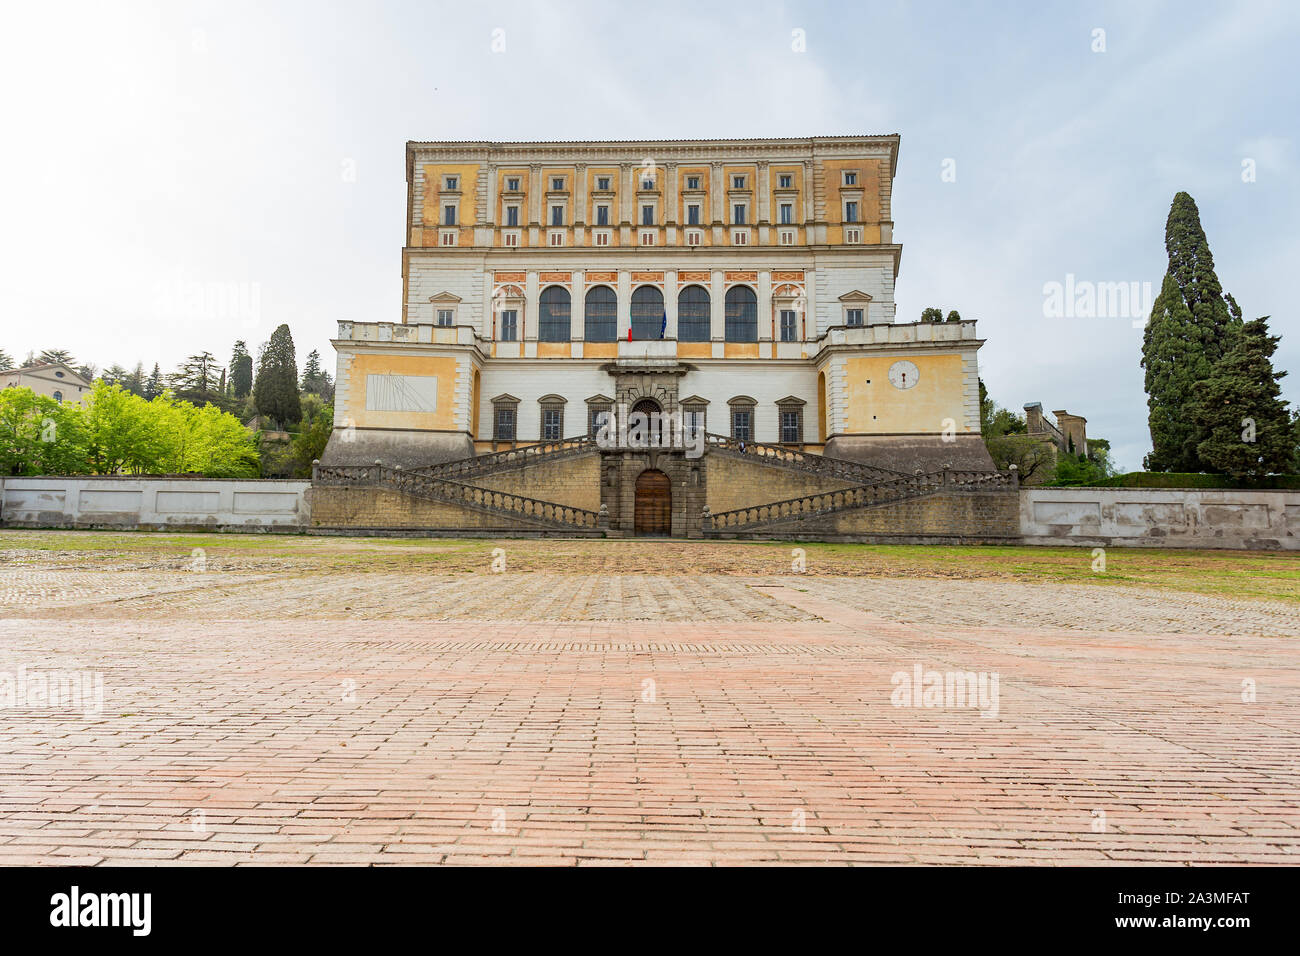 Palazzo Farnese, denominata anche Villa Farnese, famosa villa con giardino meraviglioso situato a Caprarola, Viterbo Lazio settentrionale, Italia. Foto Stock